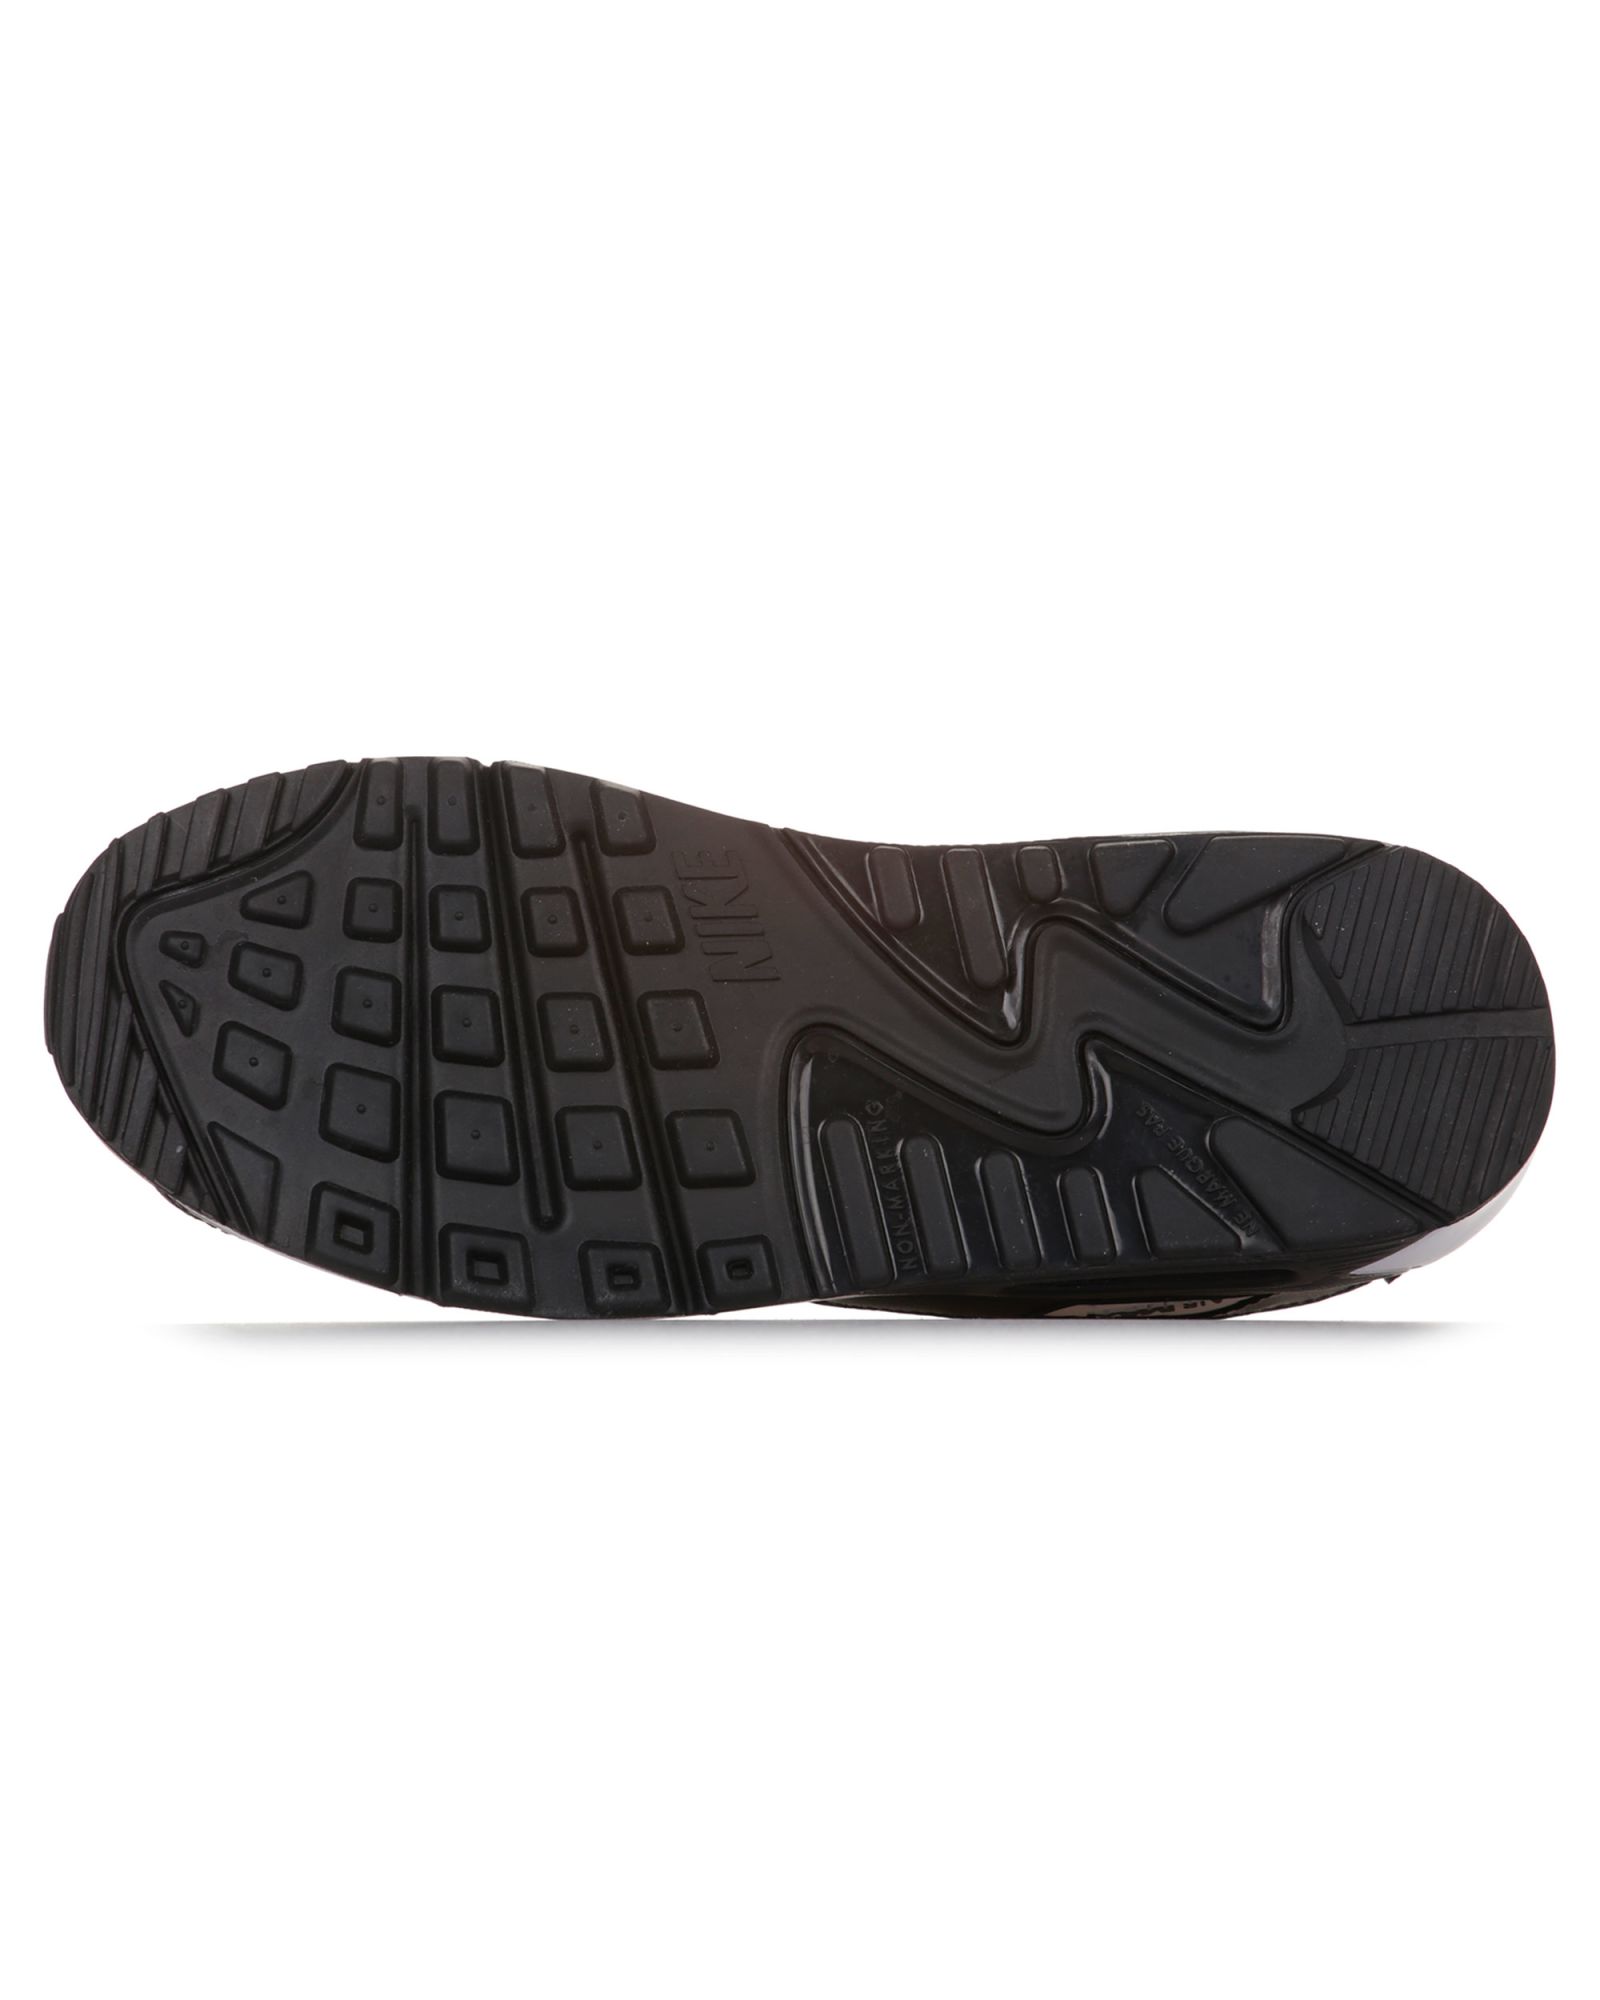 Zapatillas de paseo Air Max 90 LTR Negro Flúor - Fútbol Factory